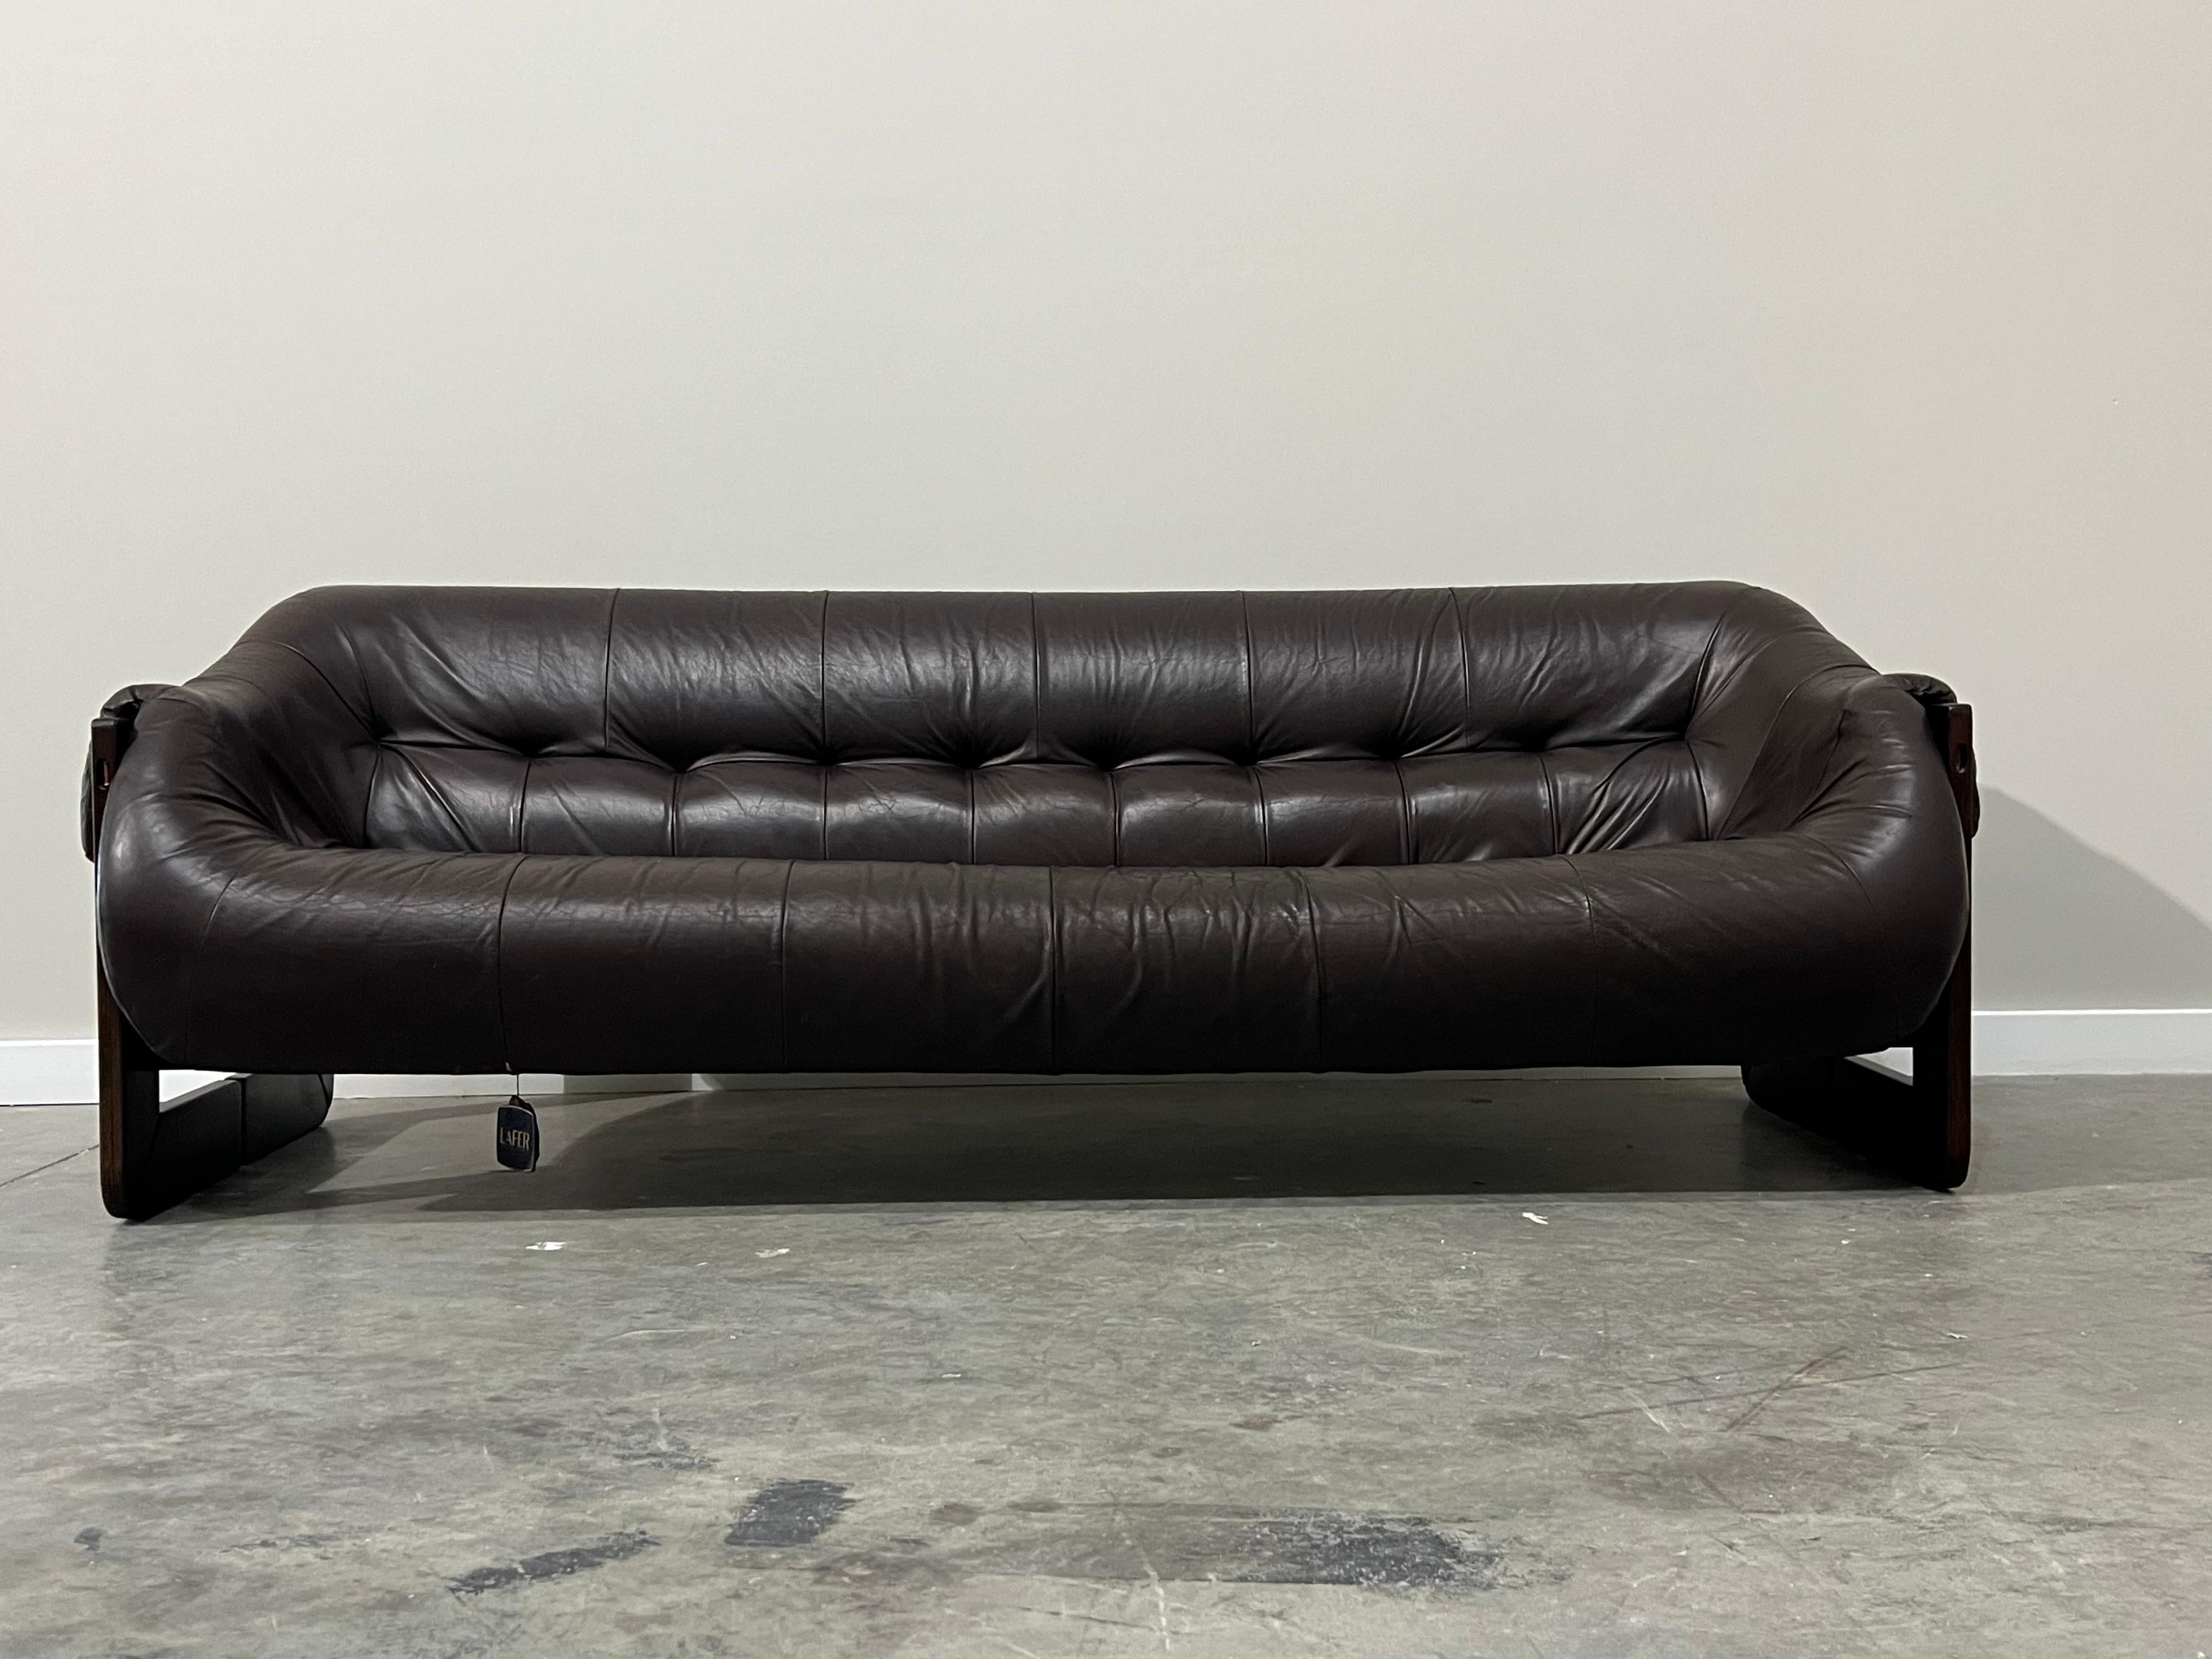 Bequemes und elegantes Sofa, entworfen von Percival Lafer aus Brasilien, um 1970. Das schokoladenbraune Lederkissen sitzt auf ledernen Trageriemen. Die Basis des Sofas und die Beine sind aus geschnitztem Palisanderholz und die Beine haben eine